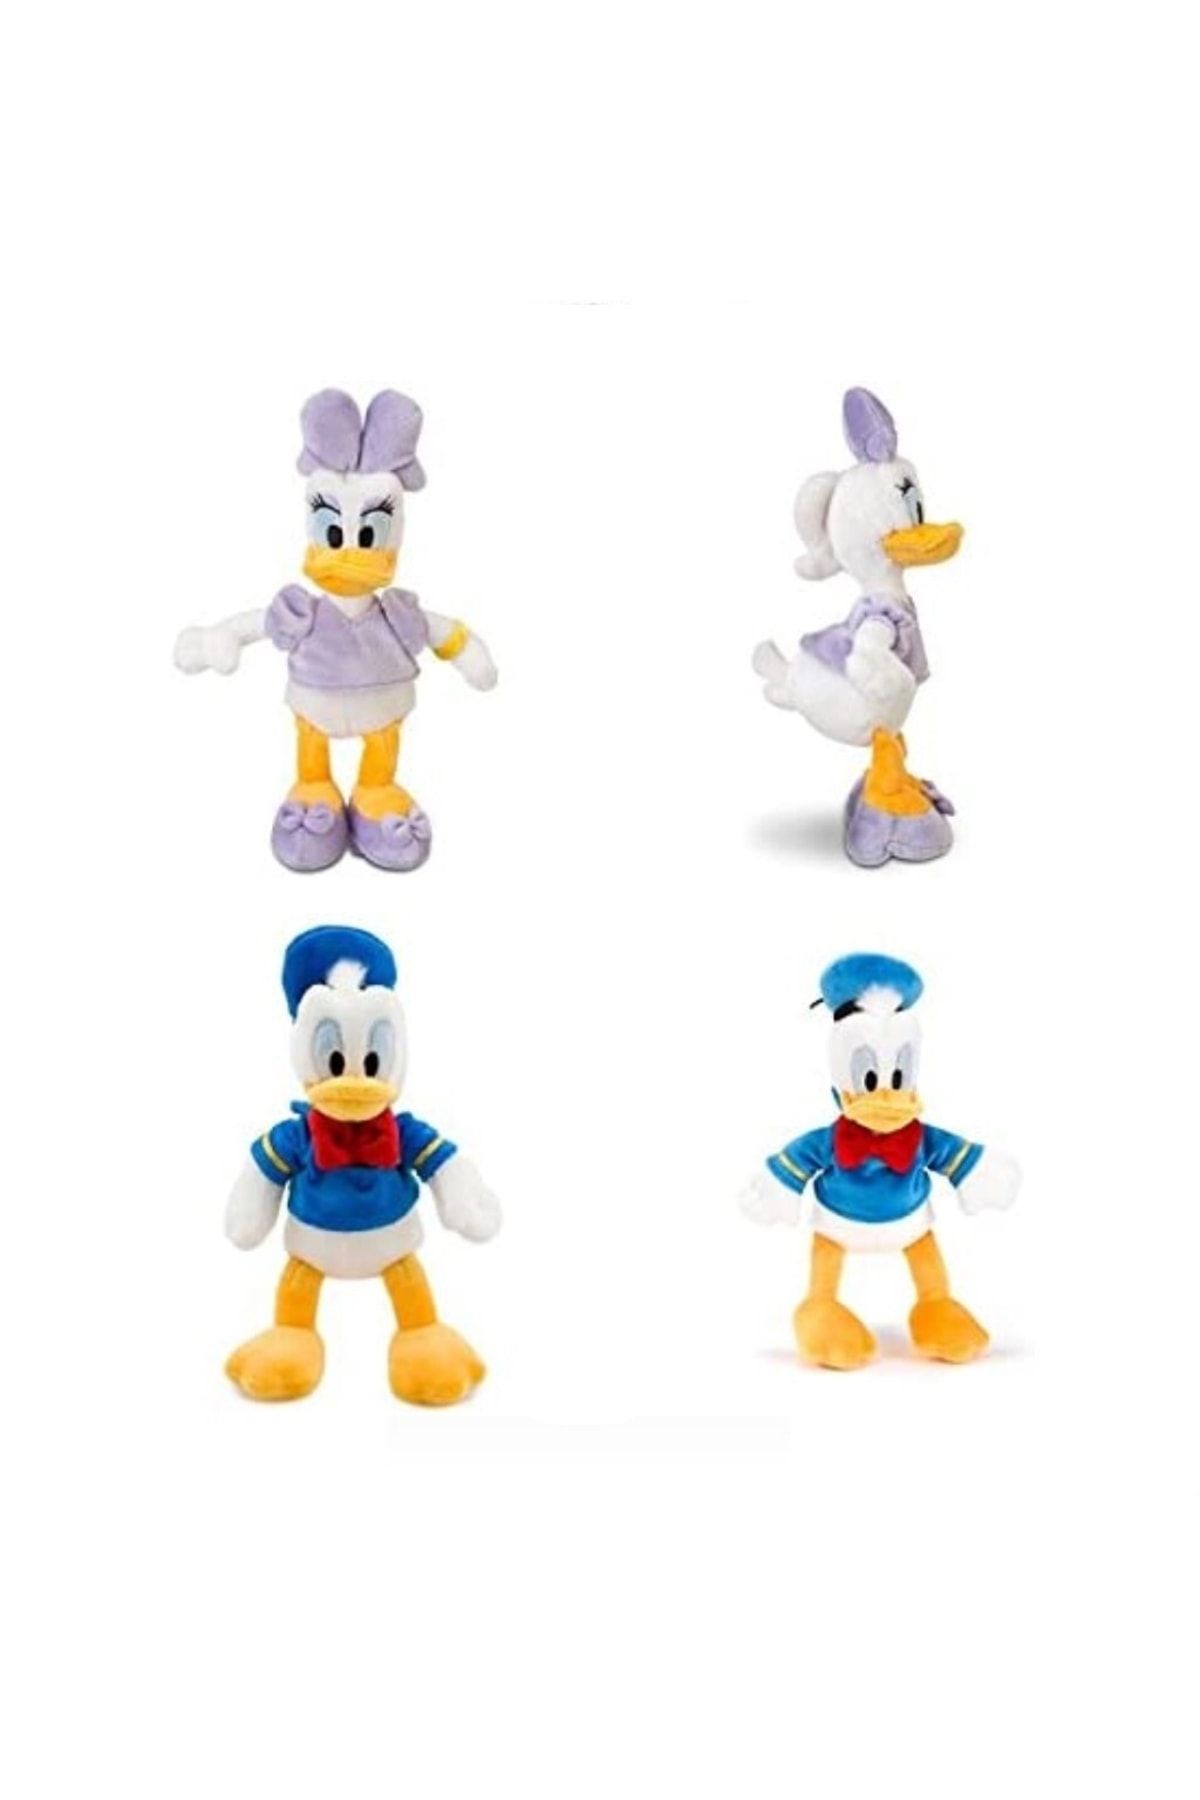 BAMTEBİ Disney Donald Daisy Peluş 25 Cm 2 Li Set Donald Ve Daisy Duck Lisanslı Sevimli Ördek Uyku Arkadaşı